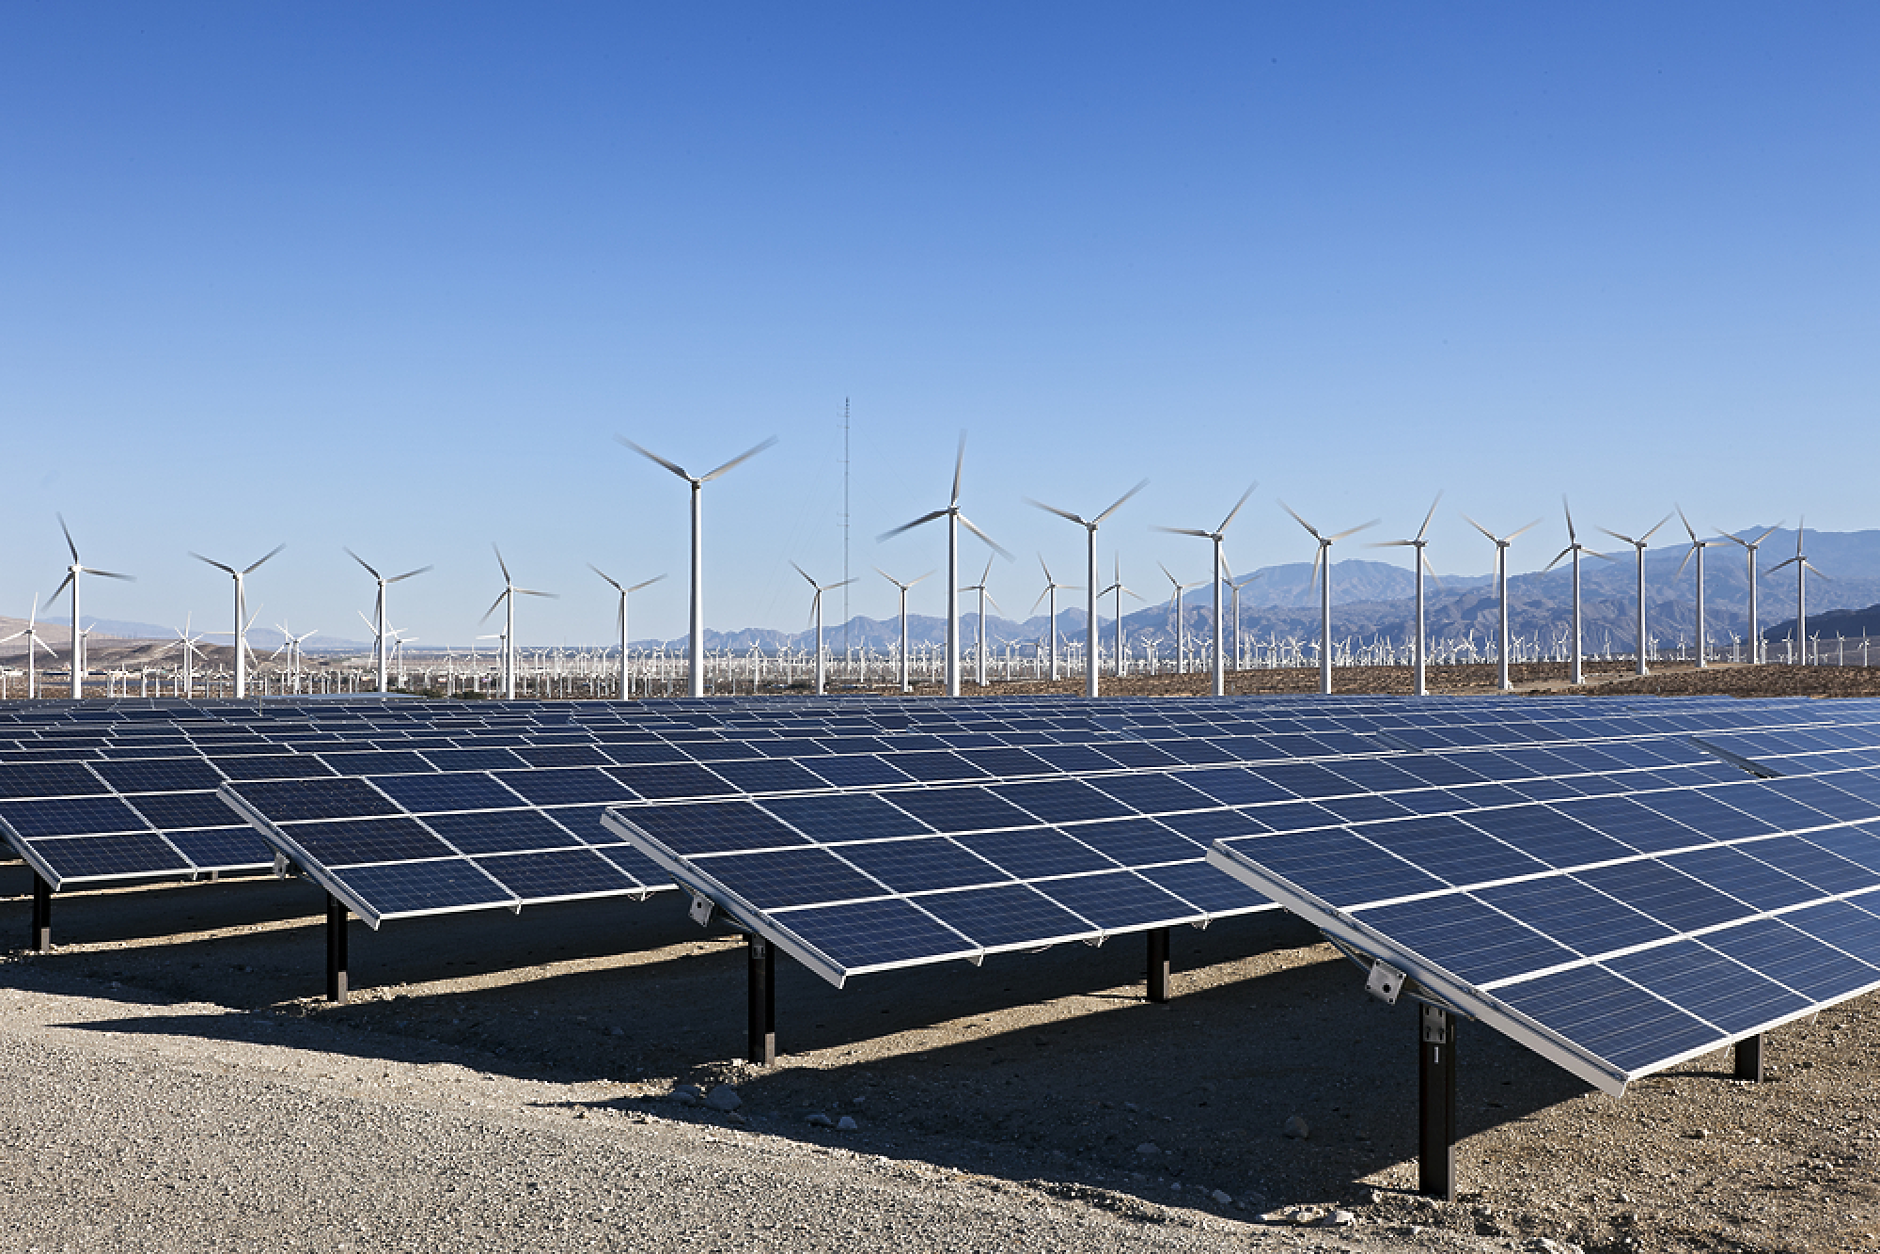 EС ще увеличи производството на енергия от възобновяеми източници до 45 на сто 